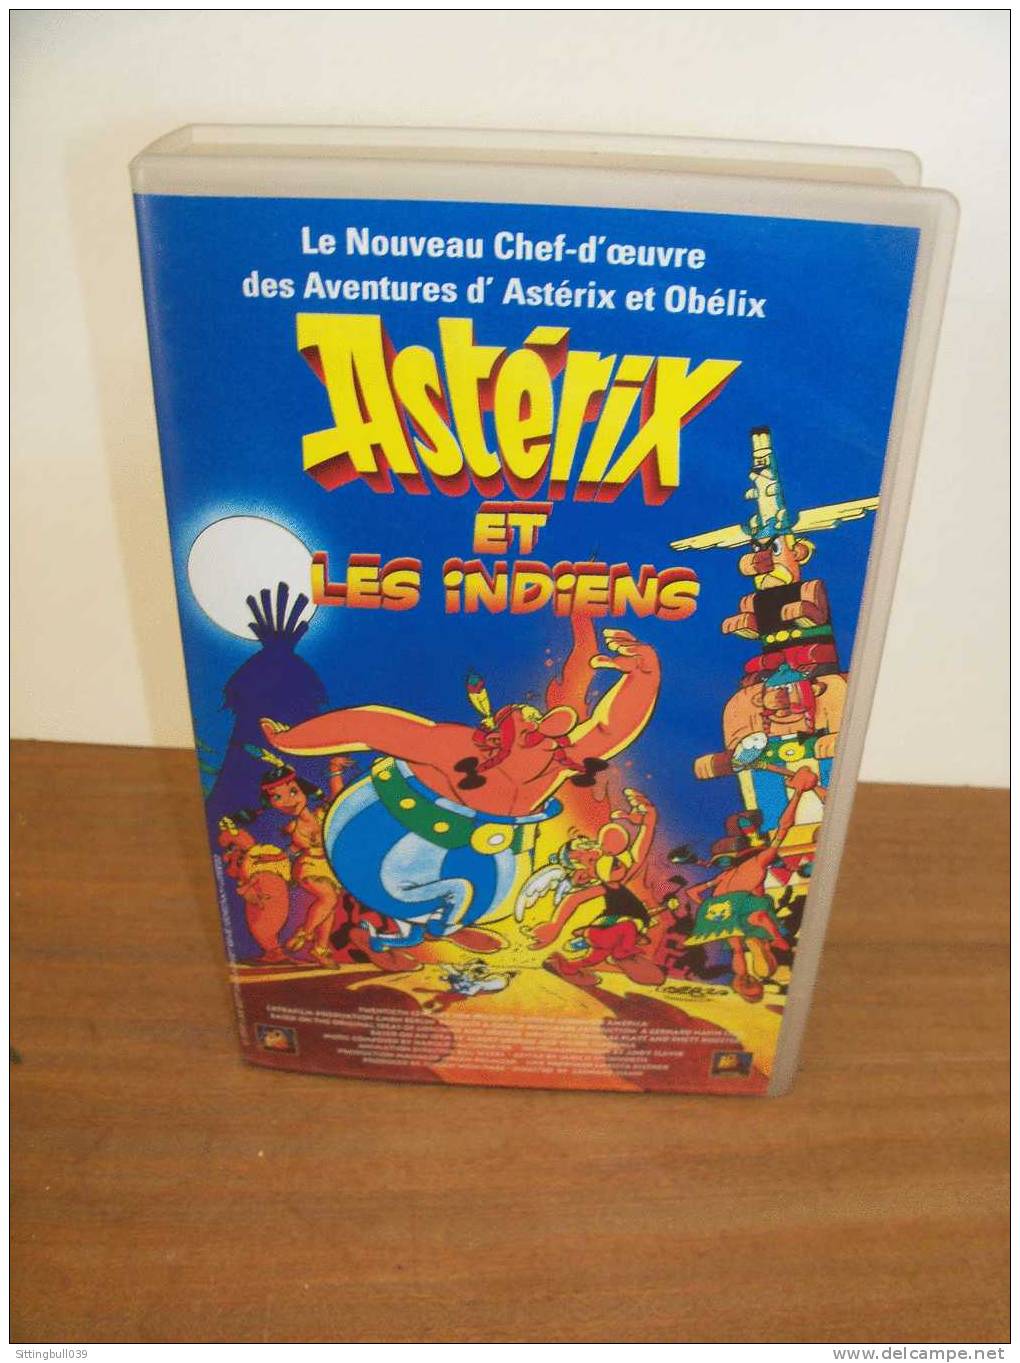 ASTERIX Et LES INDIENS. Le Film En K7 Hi-Fi Stereo + Une Entrée Gratuite Au PARC ASTERIX. 1995 Ed. A. R/GOSCINNY-UDERZO - Cassettes & DVD